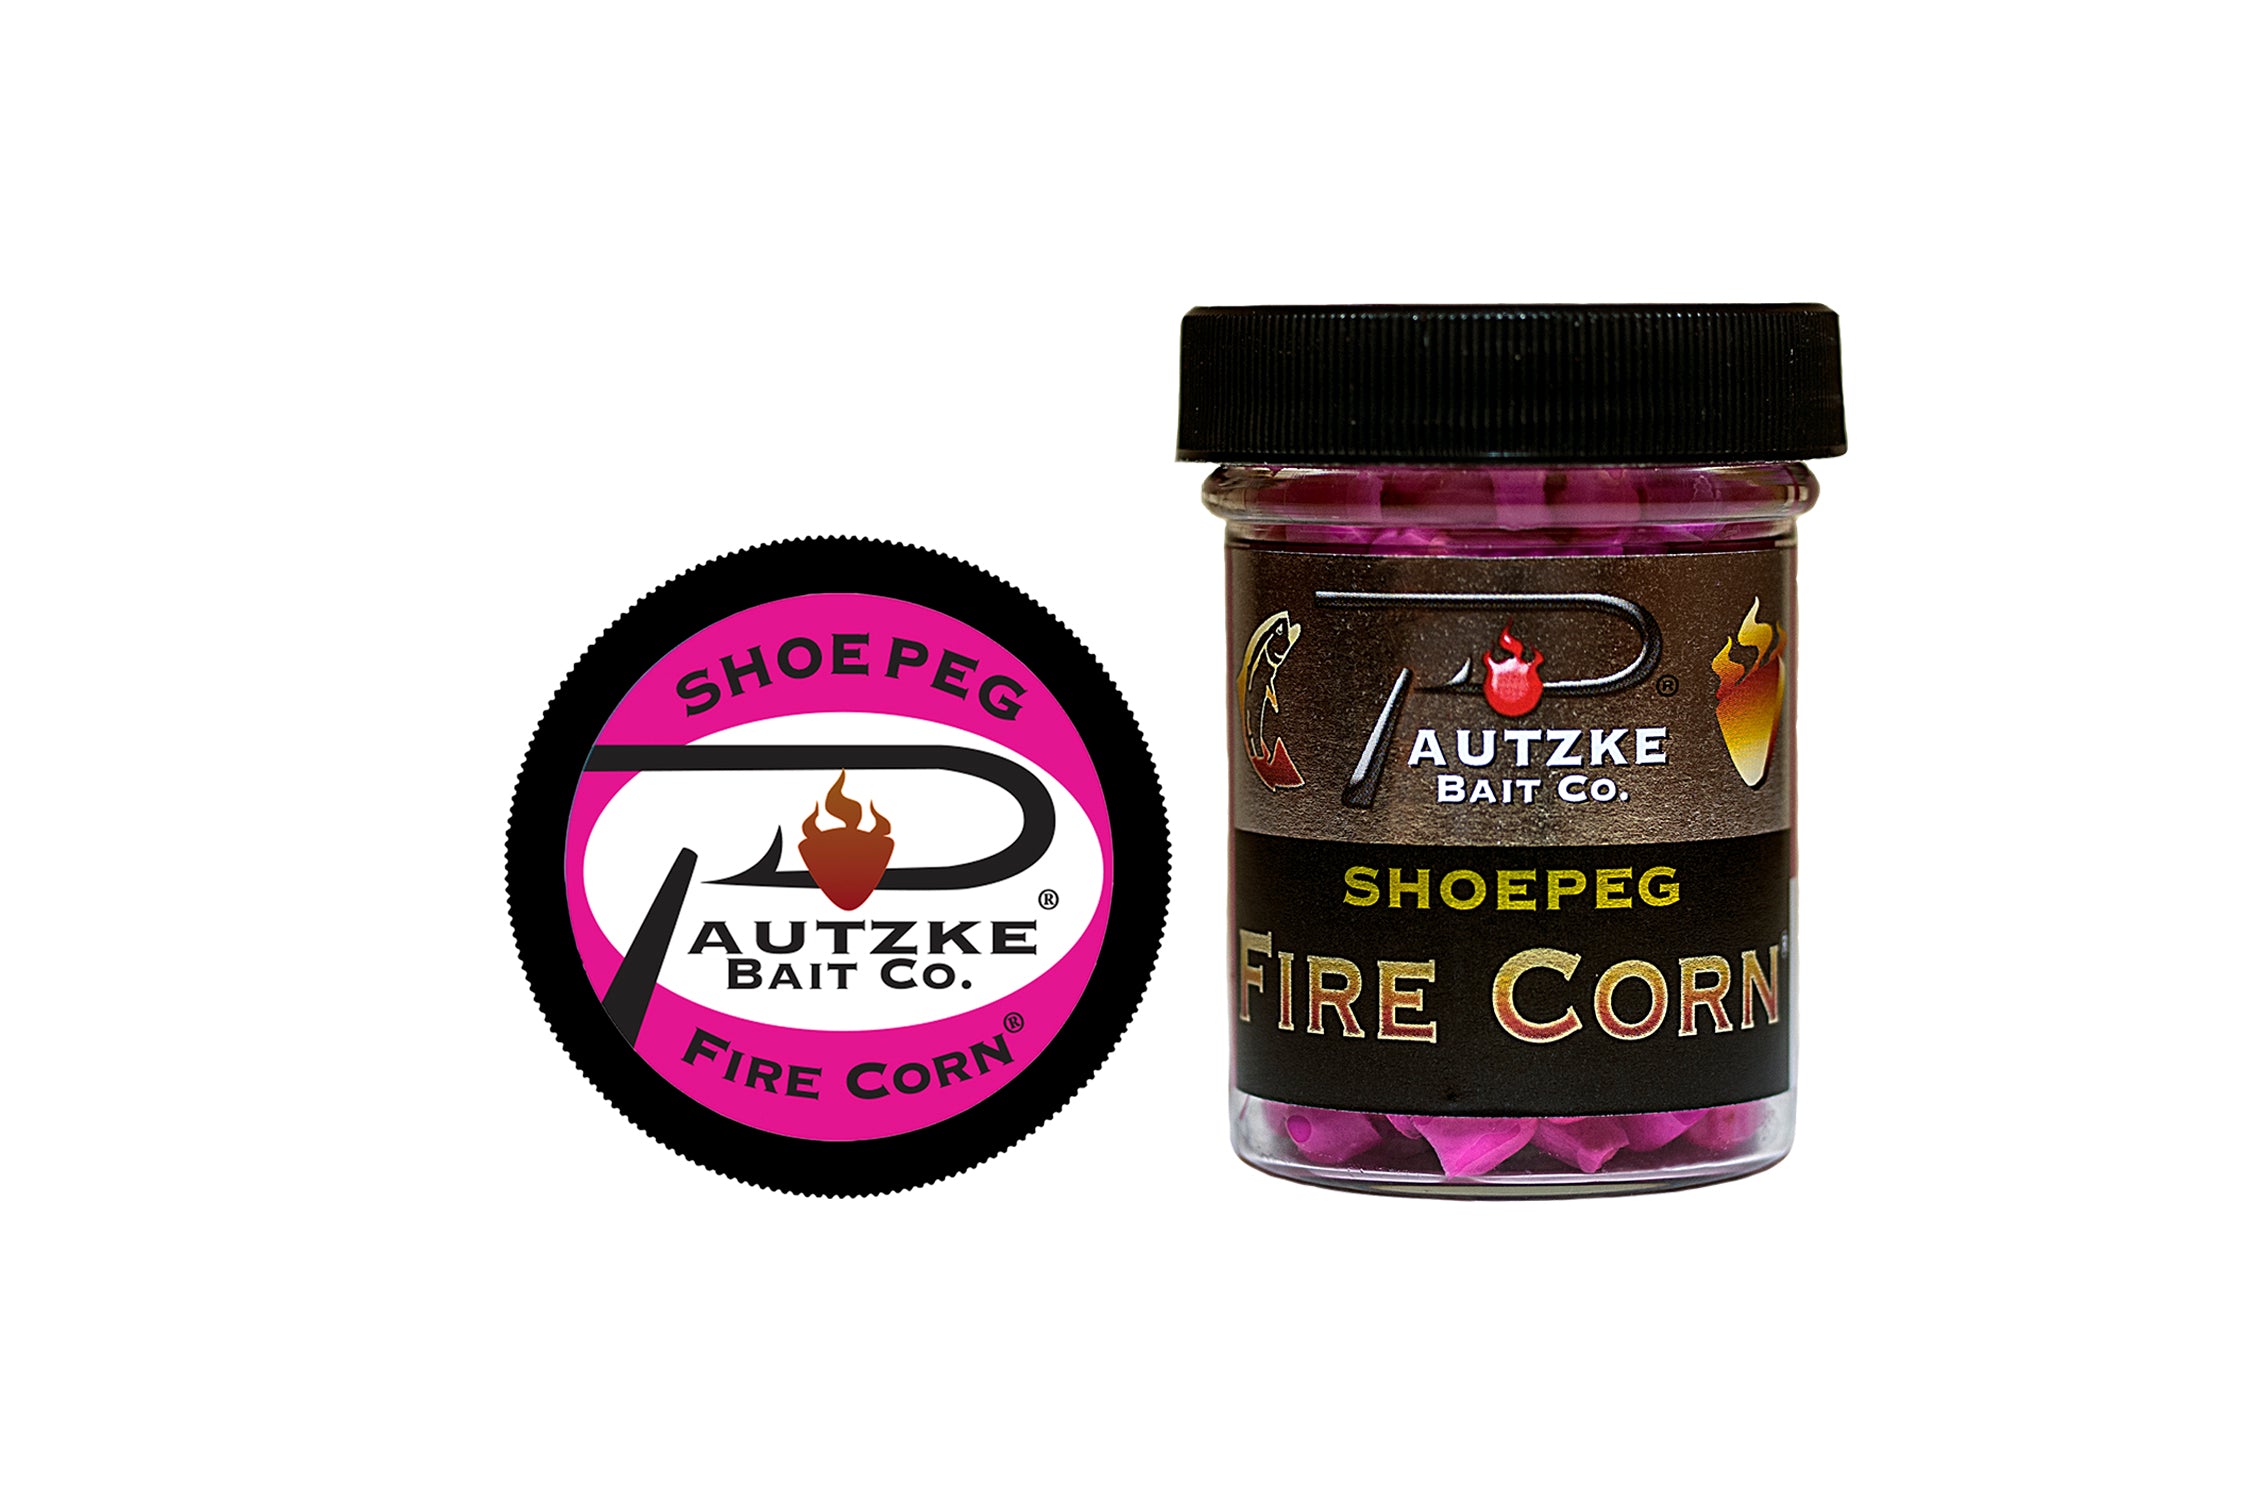 Pautzke Fire Corn - Pink 1.75 oz